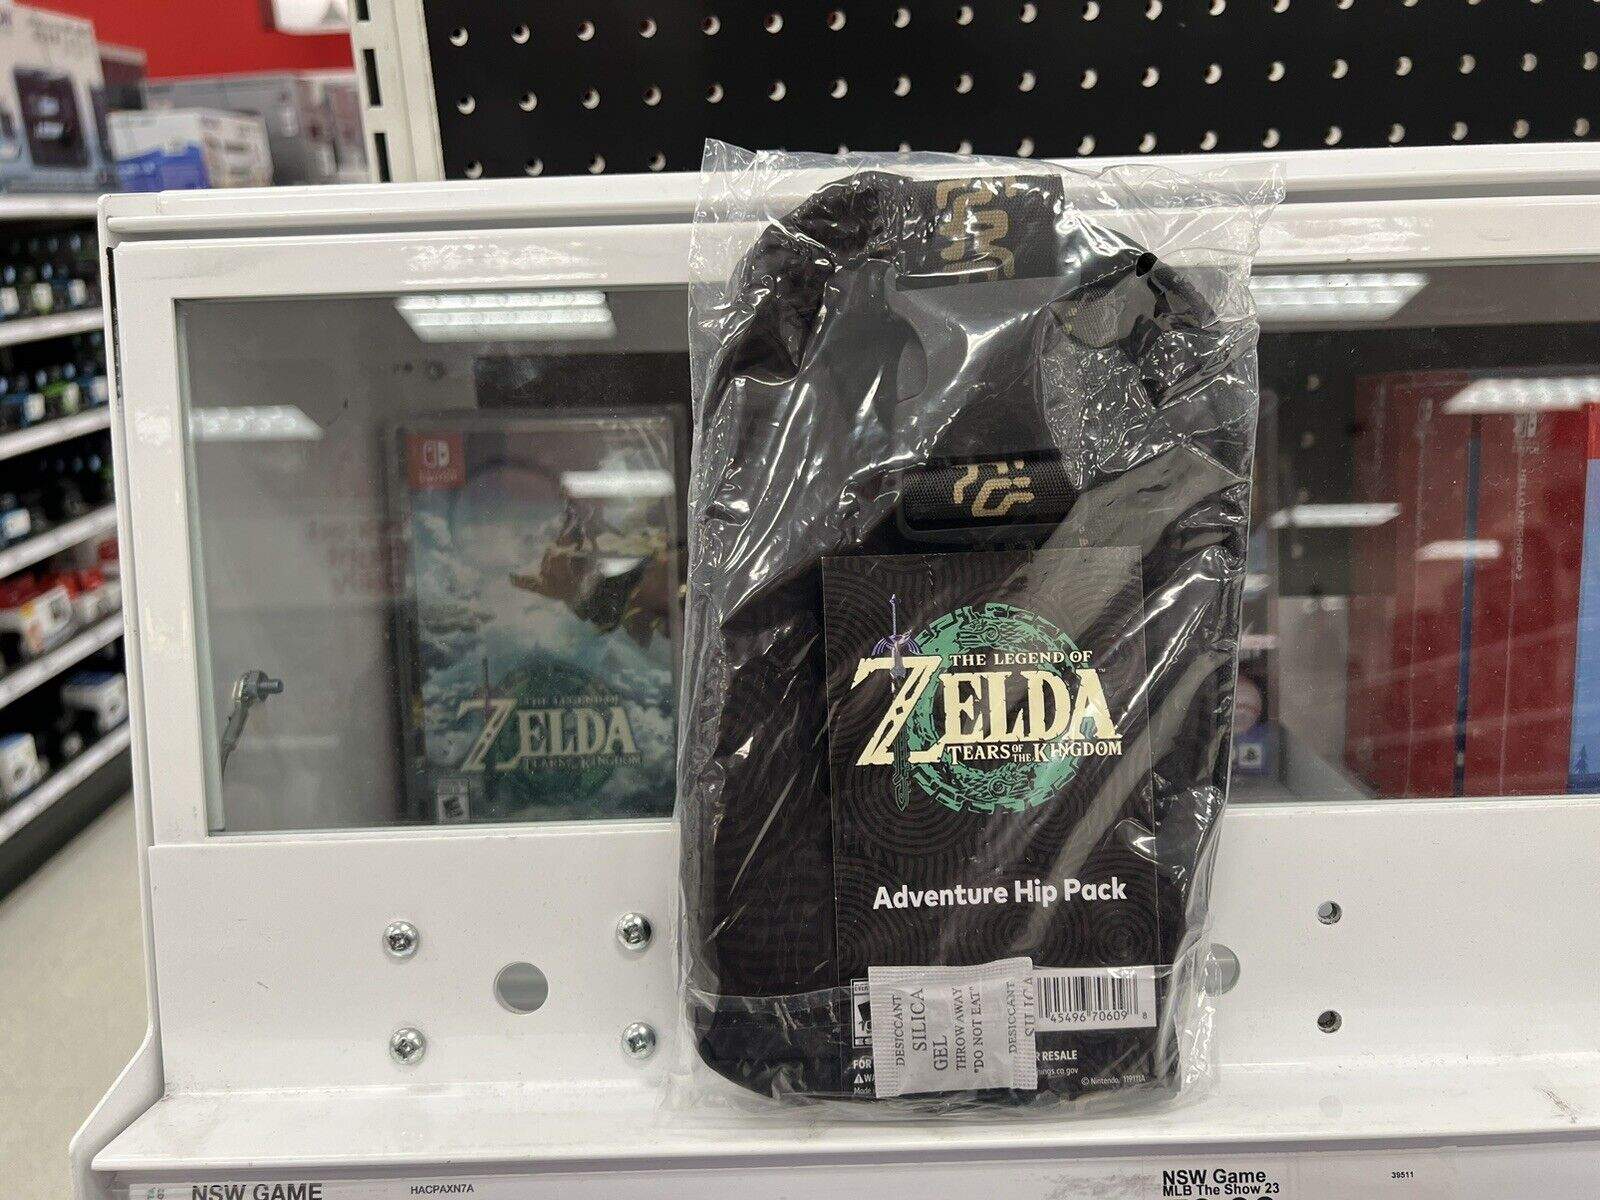 Zelda hip pack target in store